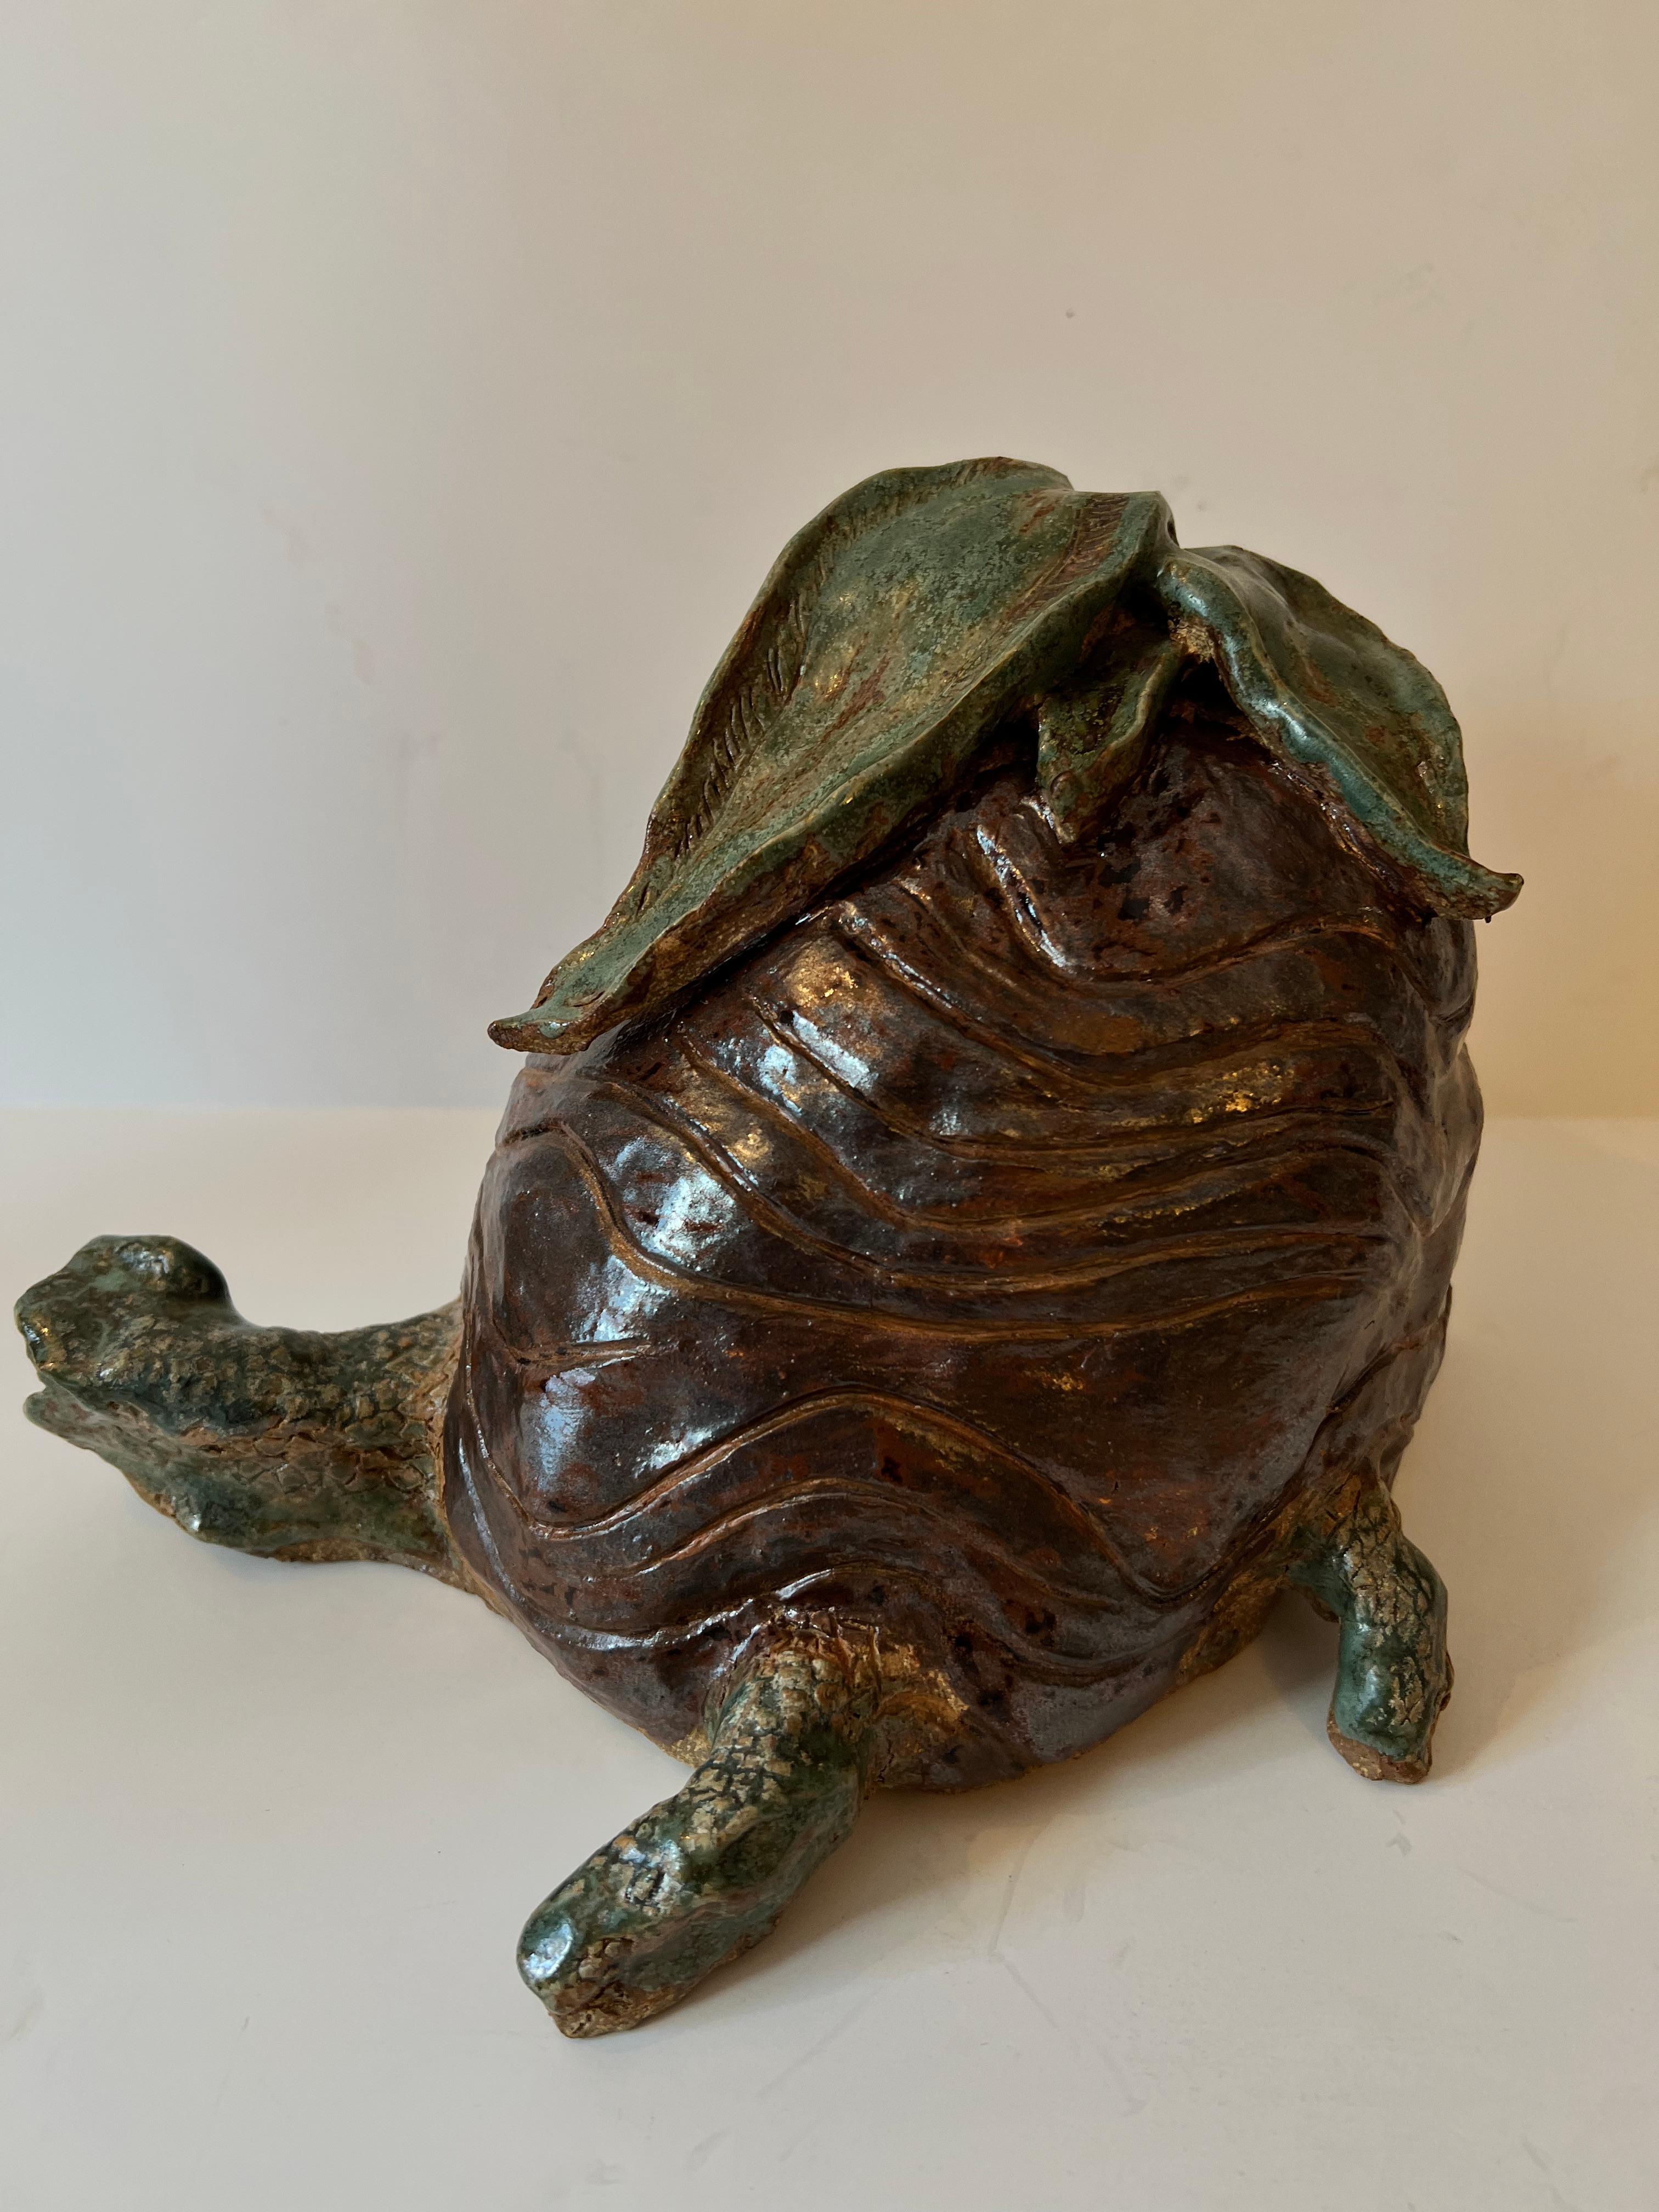 Une tortue en poterie de studio faite à la main. Cette pièce est tout à fait unique et ferait un parfait objet de décoration dans de nombreuses pièces, en particulier la chambre des enfants ou le coin jardin. La pièce est également suffisamment